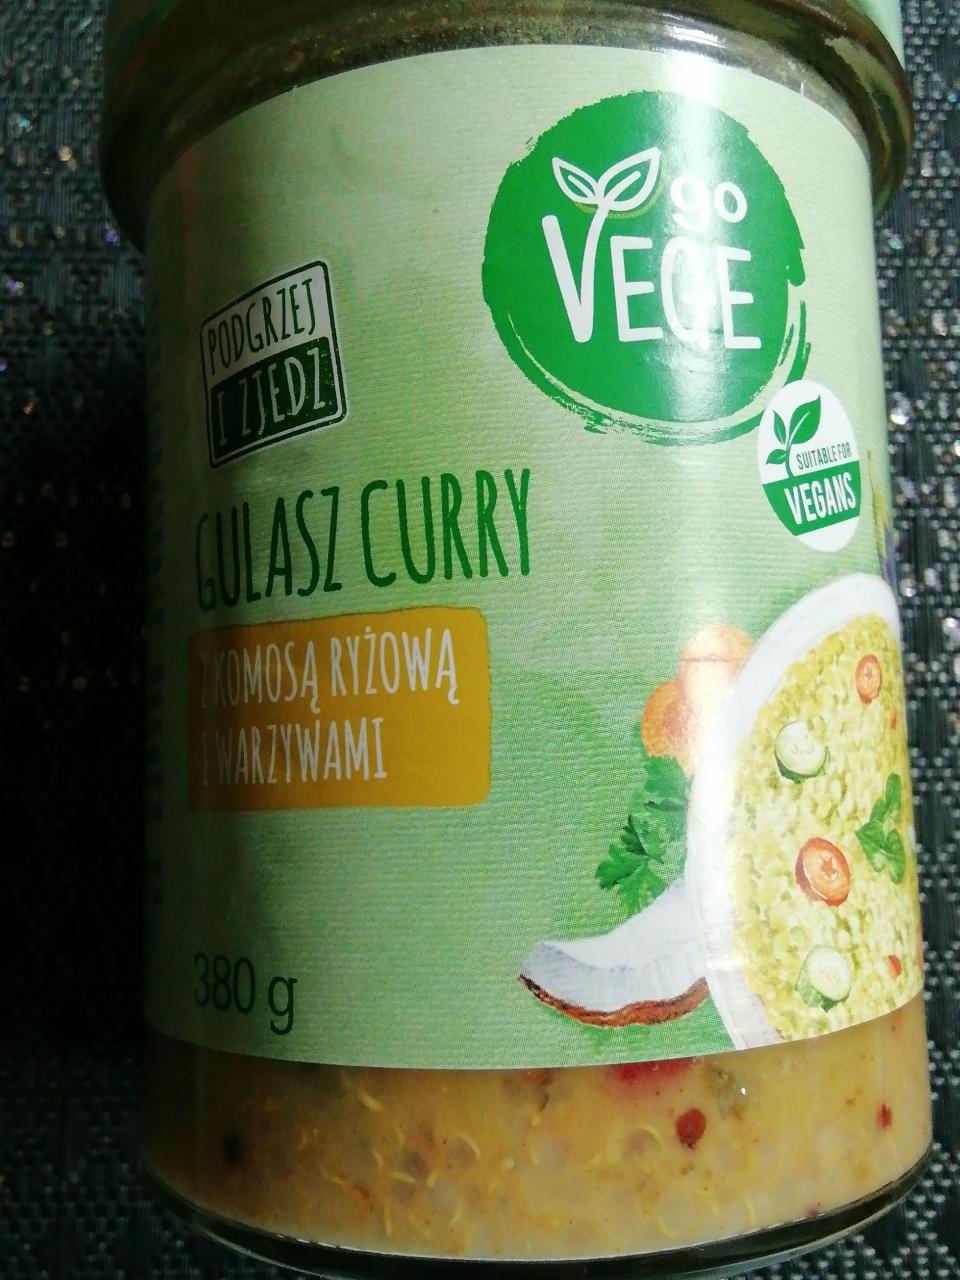 Zdjęcia - Gulasz Curry z komosą ryżową i warzywami Go Vege